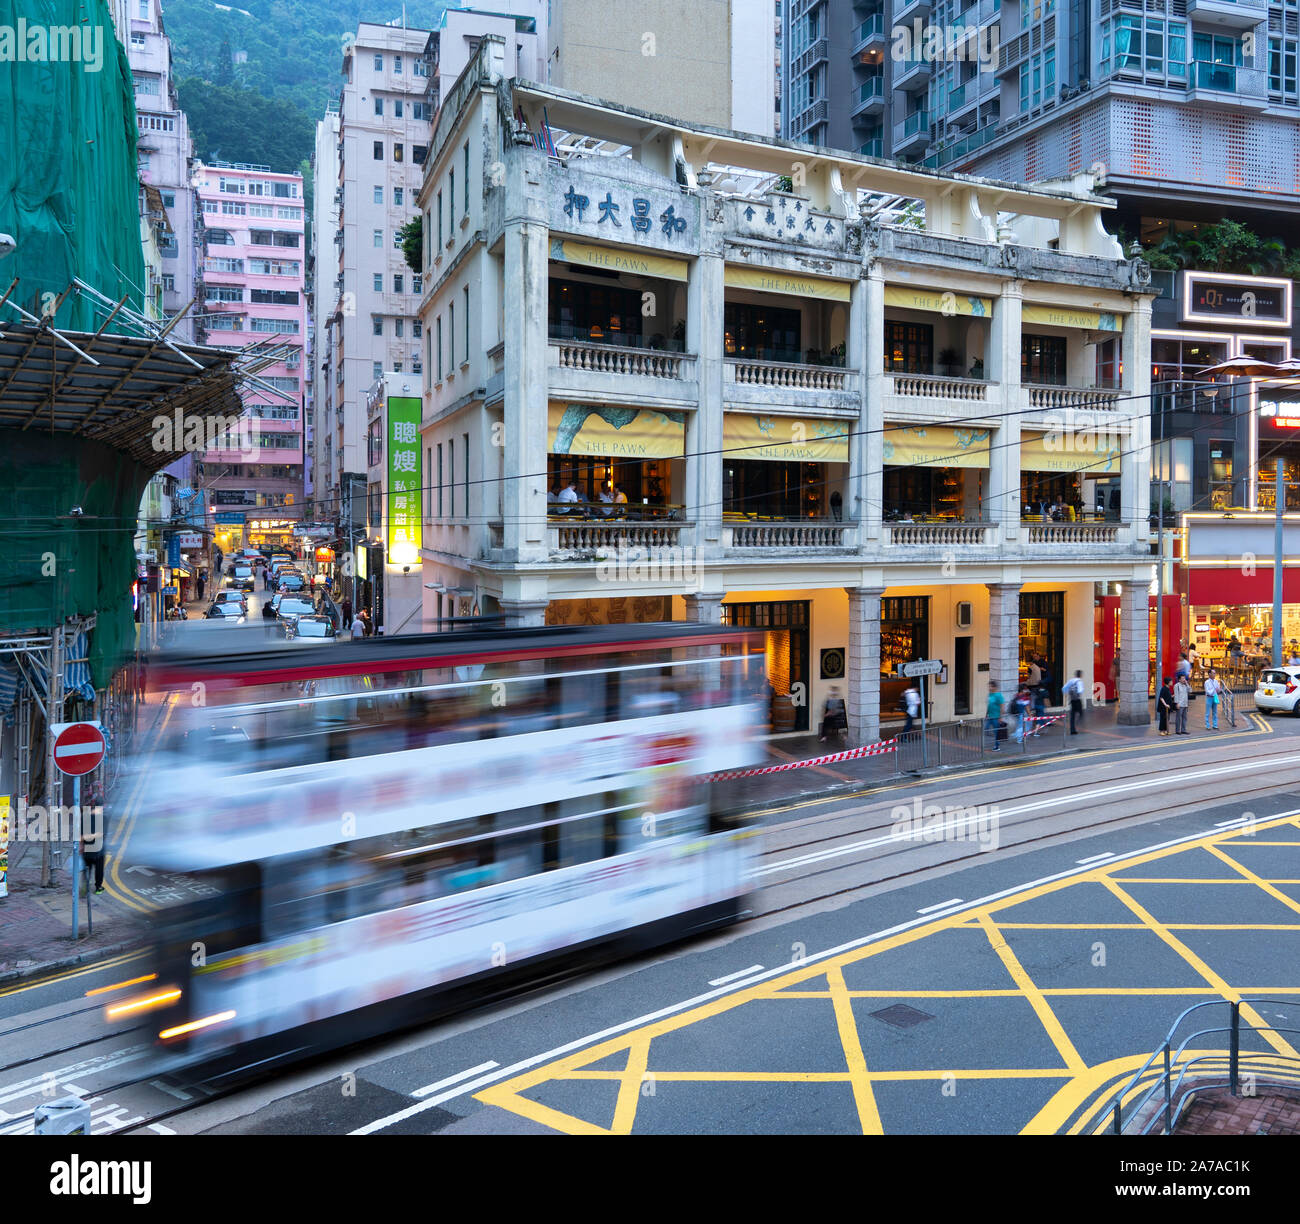 Le Tram passant vieux bâtiment colonial restaurants et bar appelé maintenant le pion à Wanchai, Hong Kong Banque D'Images